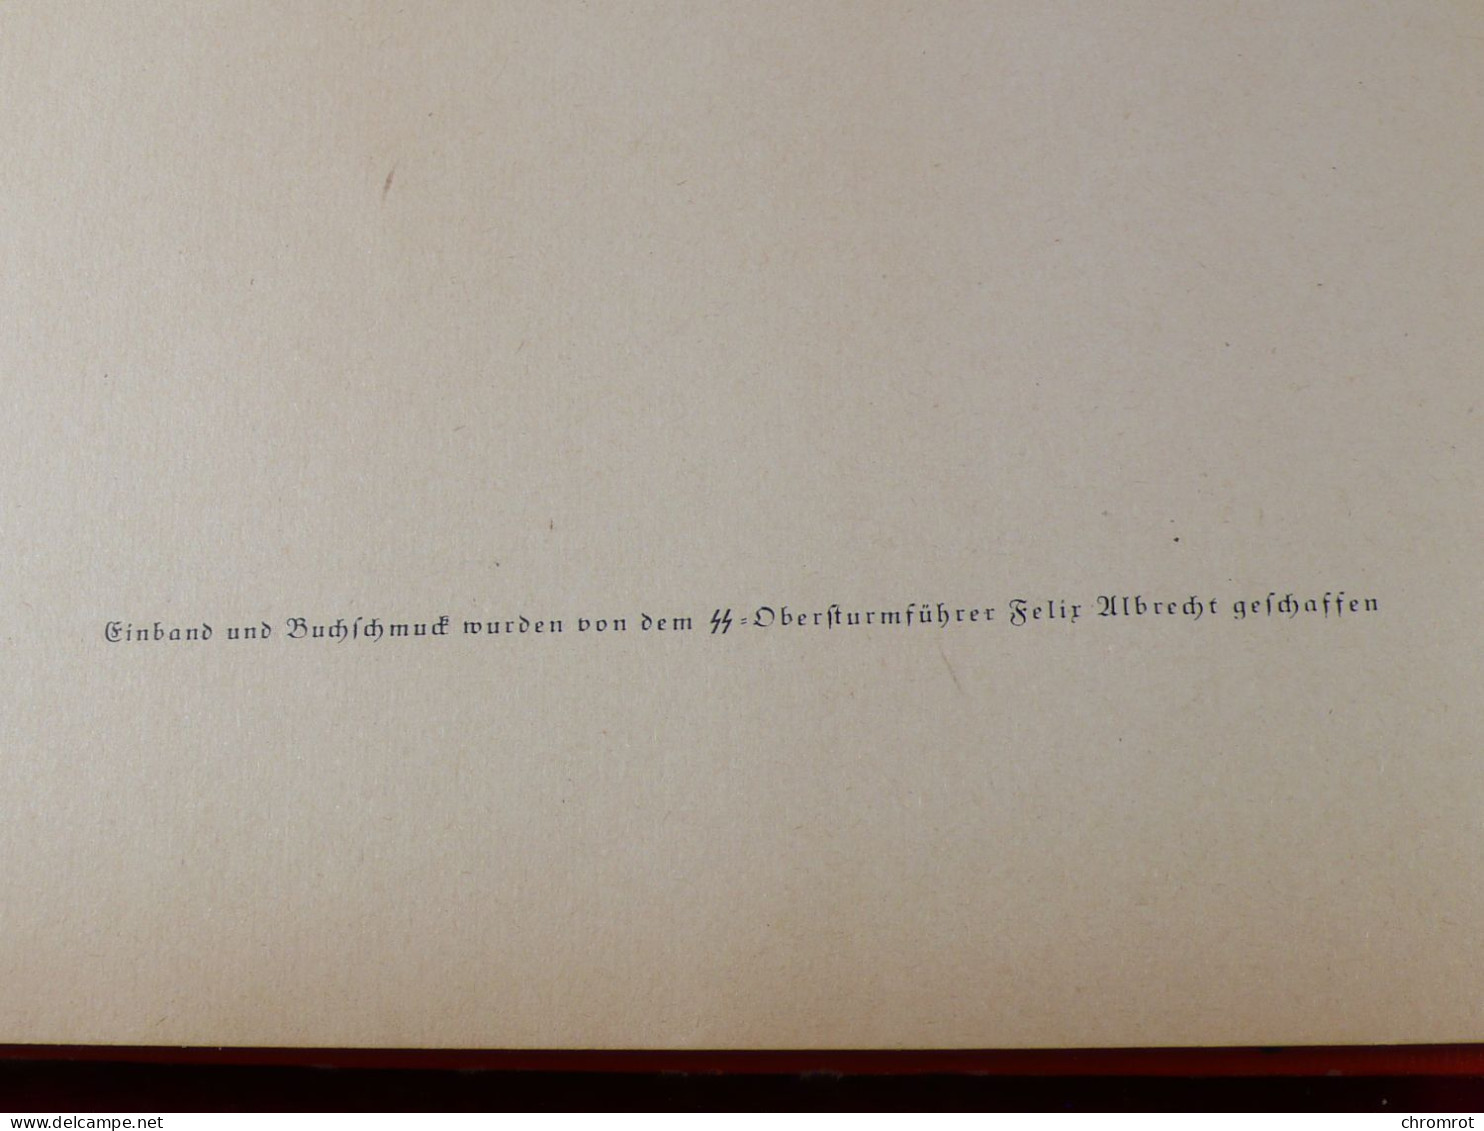 DEUTSCHLAND ERWACHT 1933 Werden Kampf und Sieg der NSDAP Cigaretten - Bilderdienst 152 Seiten Bilder komplett